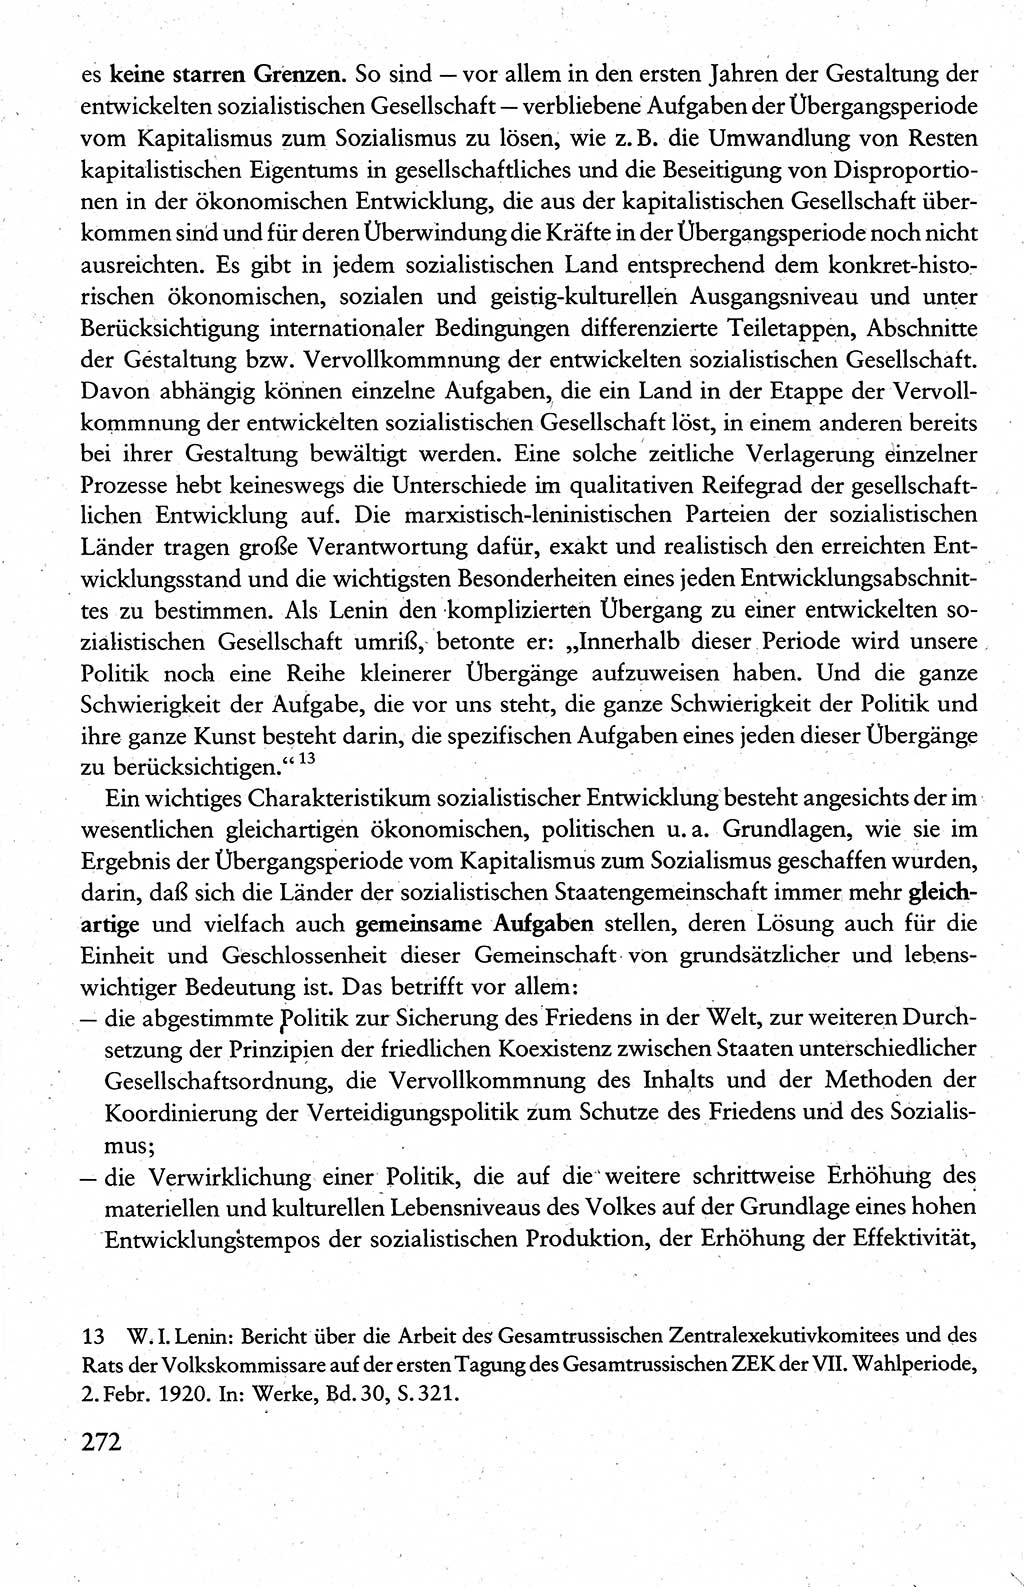 Wissenschaftlicher Kommunismus [Deutsche Demokratische Republik (DDR)], Lehrbuch für das marxistisch-leninistische Grundlagenstudium 1983, Seite 272 (Wiss. Komm. DDR Lb. 1983, S. 272)